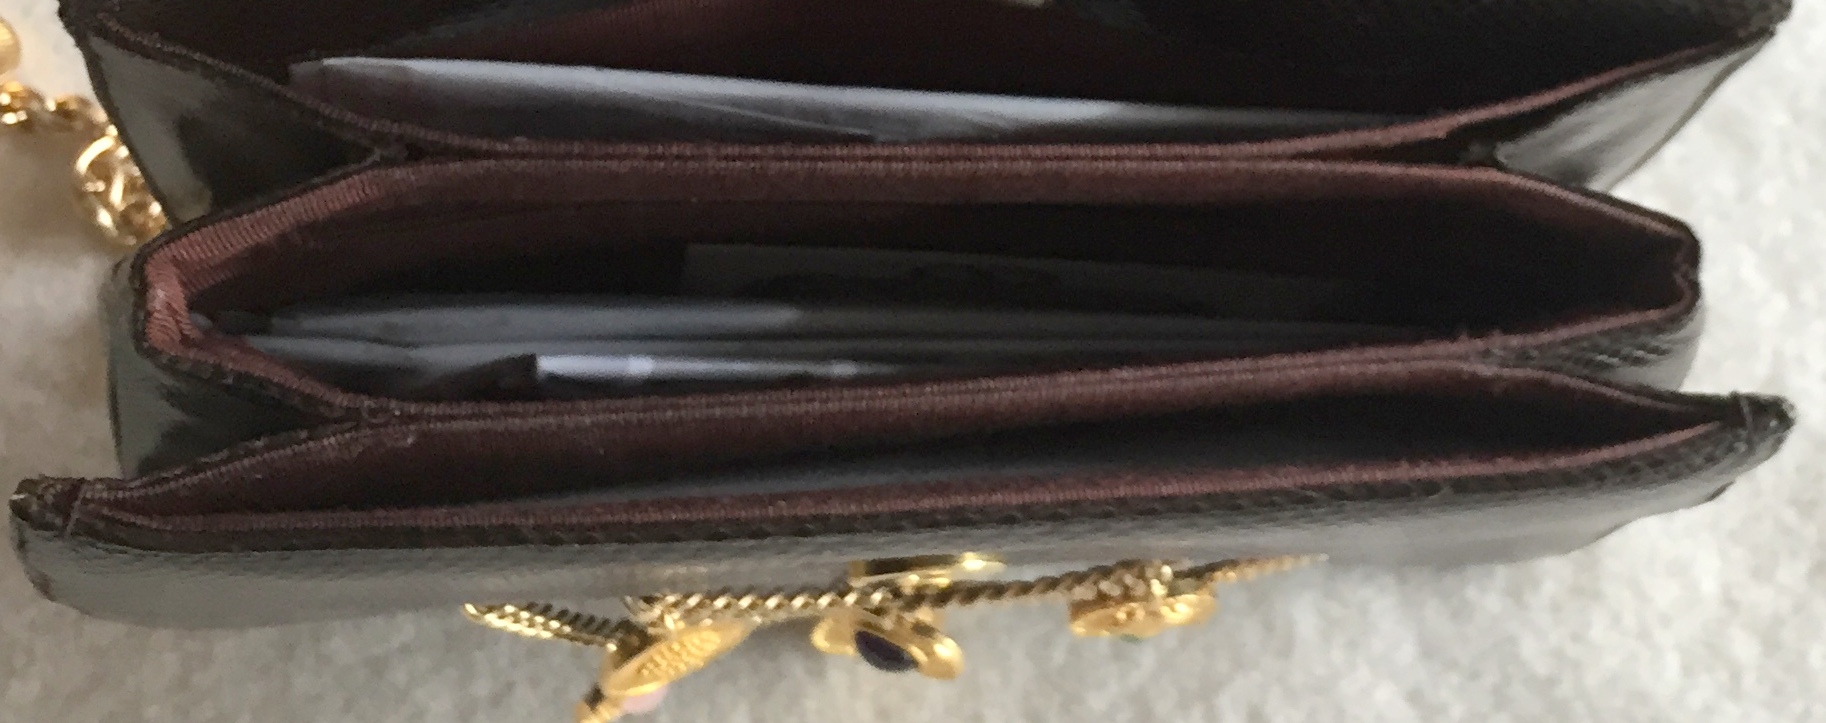 Rare Vintage Unused Judith Leiber Jewelled Snakeskin Bag